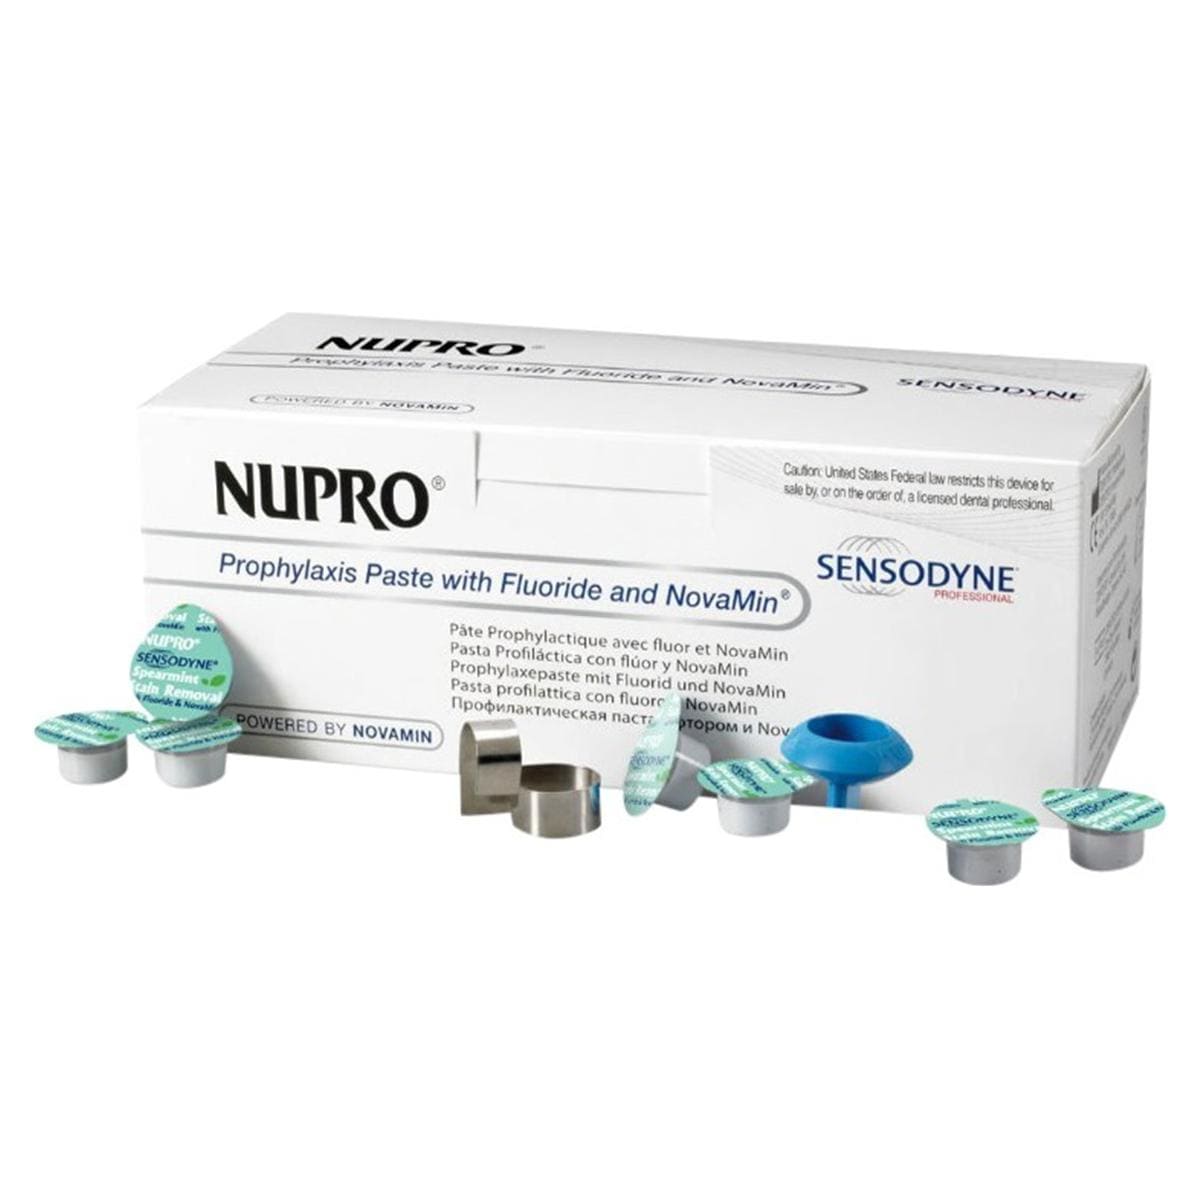 Nupro Sensodyne Prophylaxis paste single dose met fluoride - Orange, polishing